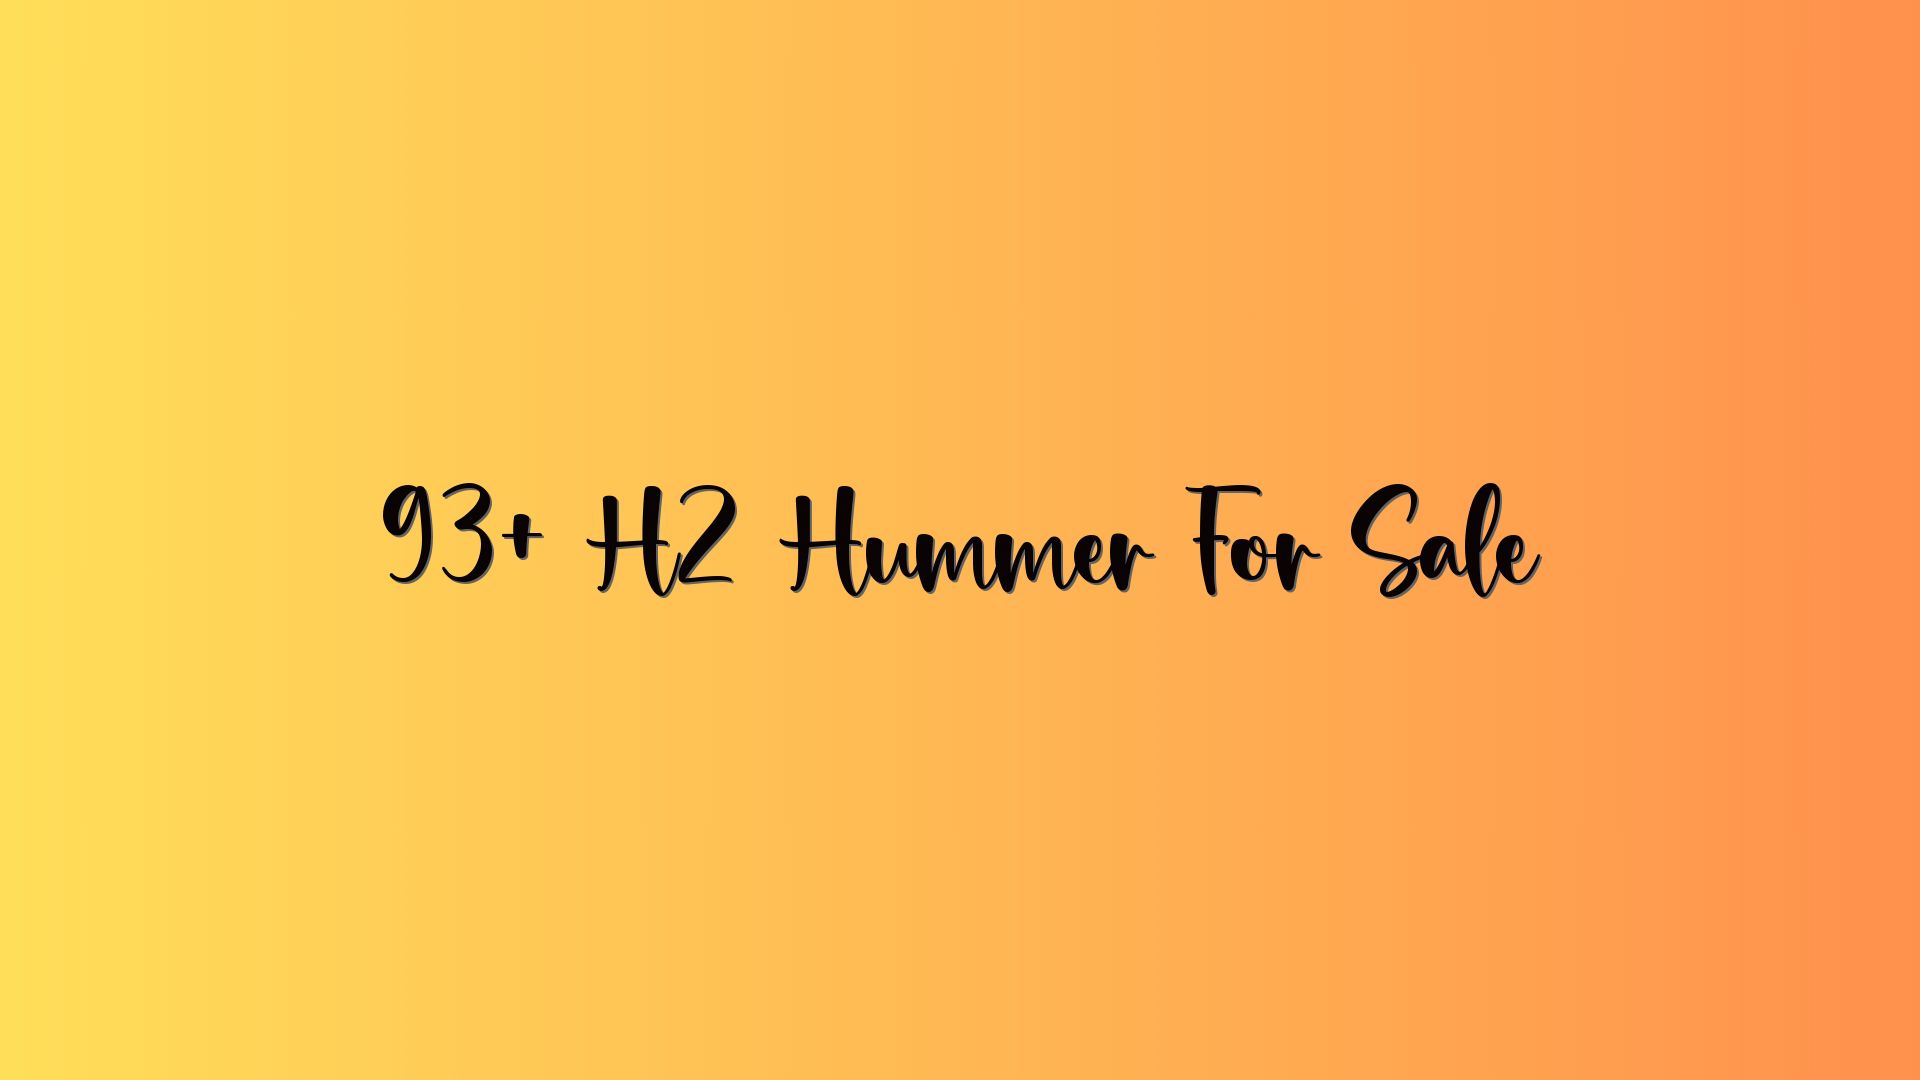 93+ H2 Hummer For Sale